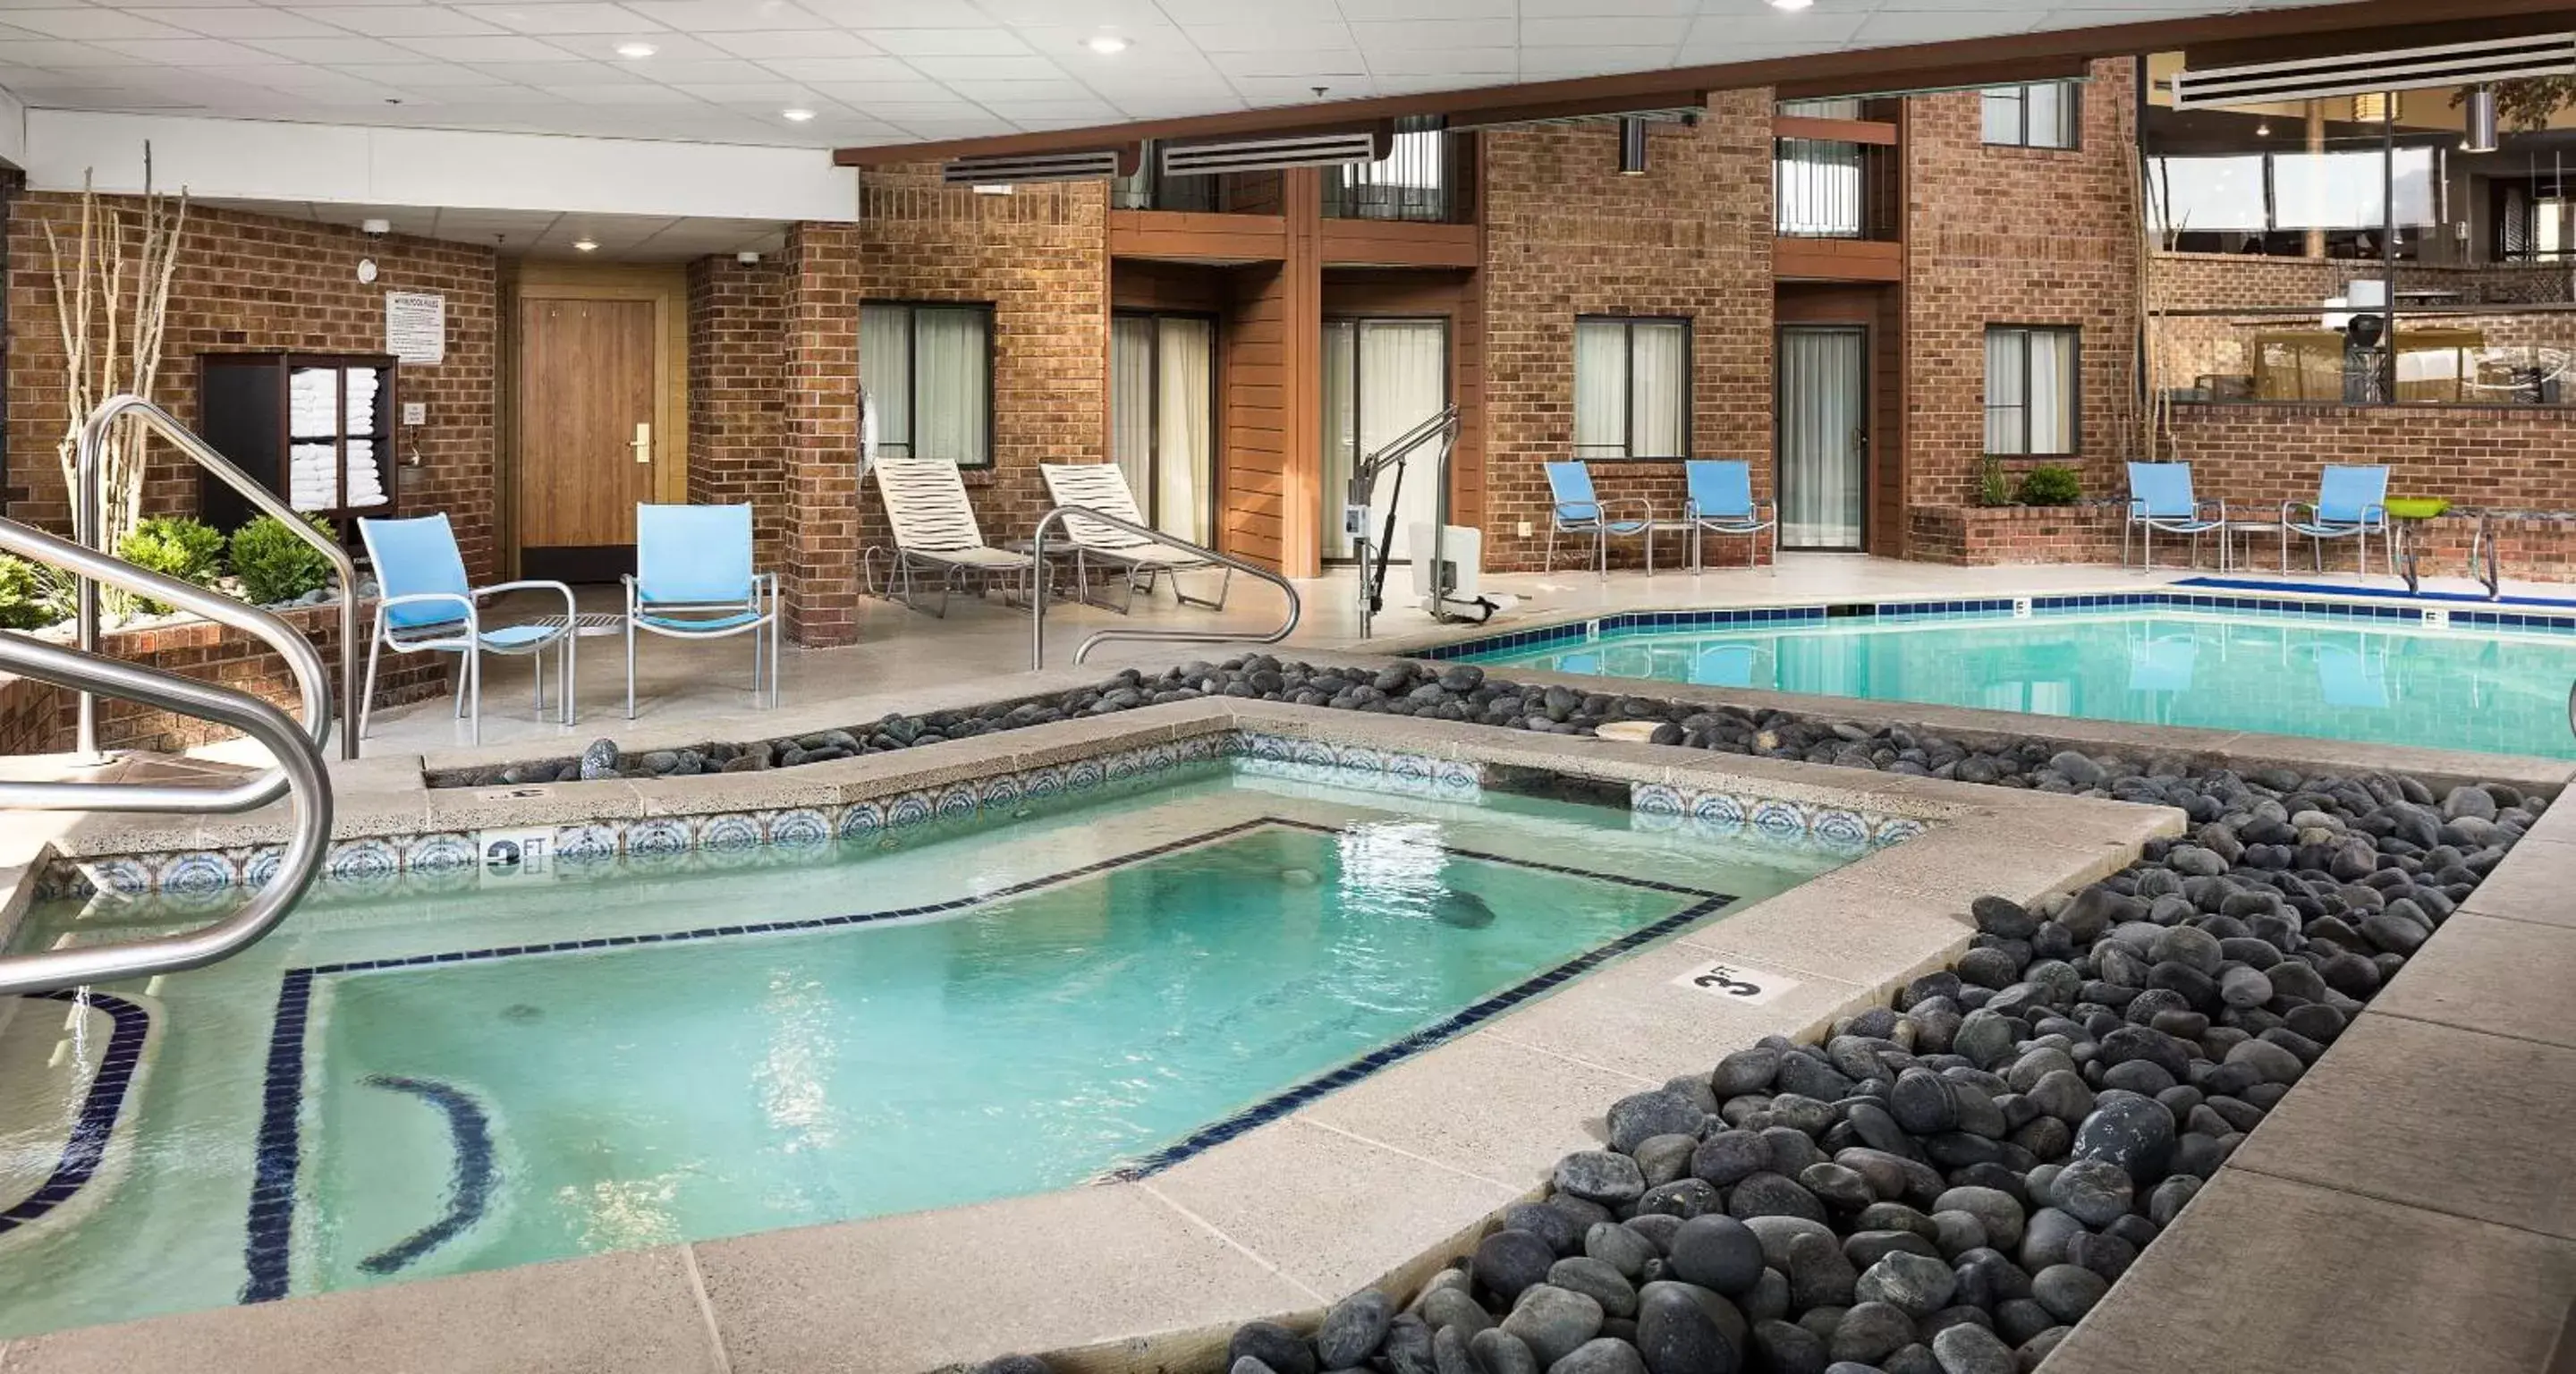 On site, Swimming Pool in Best Western Landmark Inn